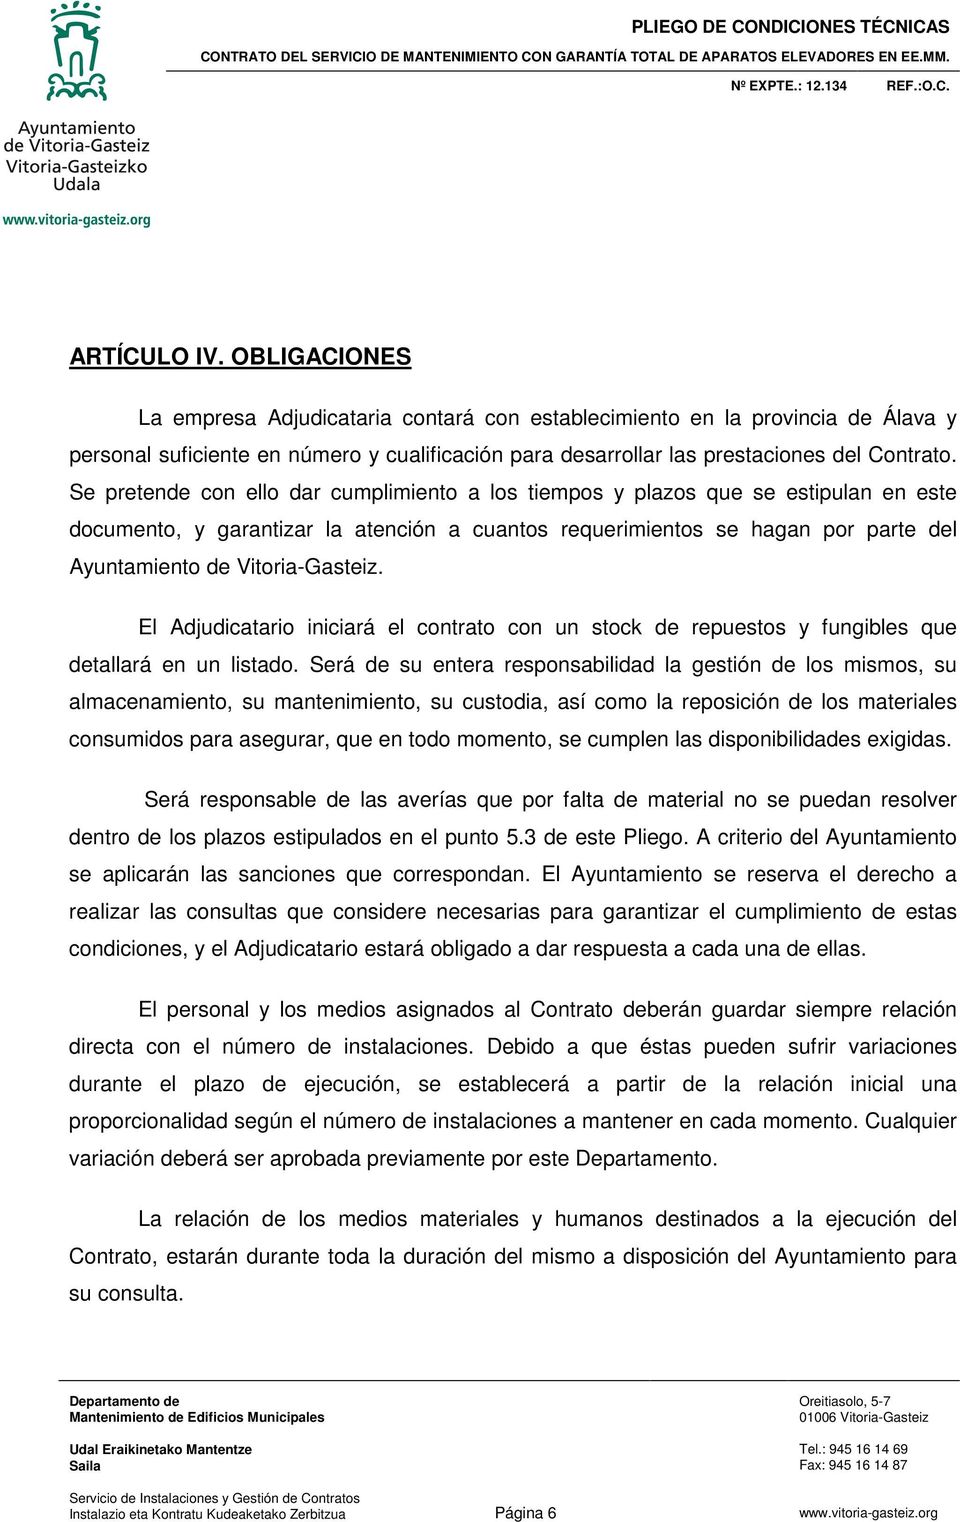 Vitoria-Gasteiz. El Adjudicatario iniciará el contrato con un stock de repuestos y fungibles que detallará en un listado.